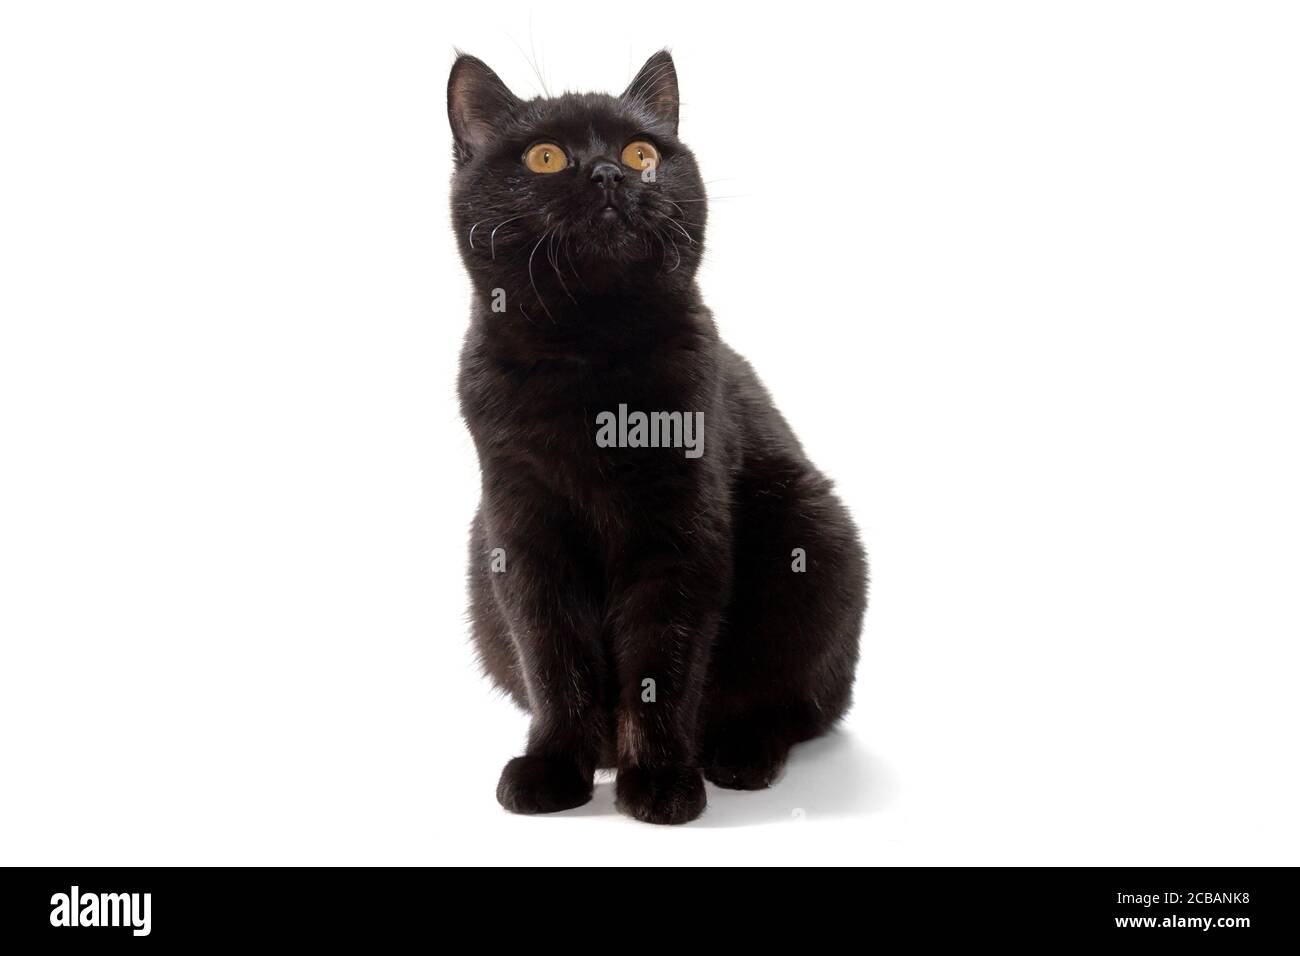 Gatto nero britannico con occhi gialli su sfondo bianco Foto Stock